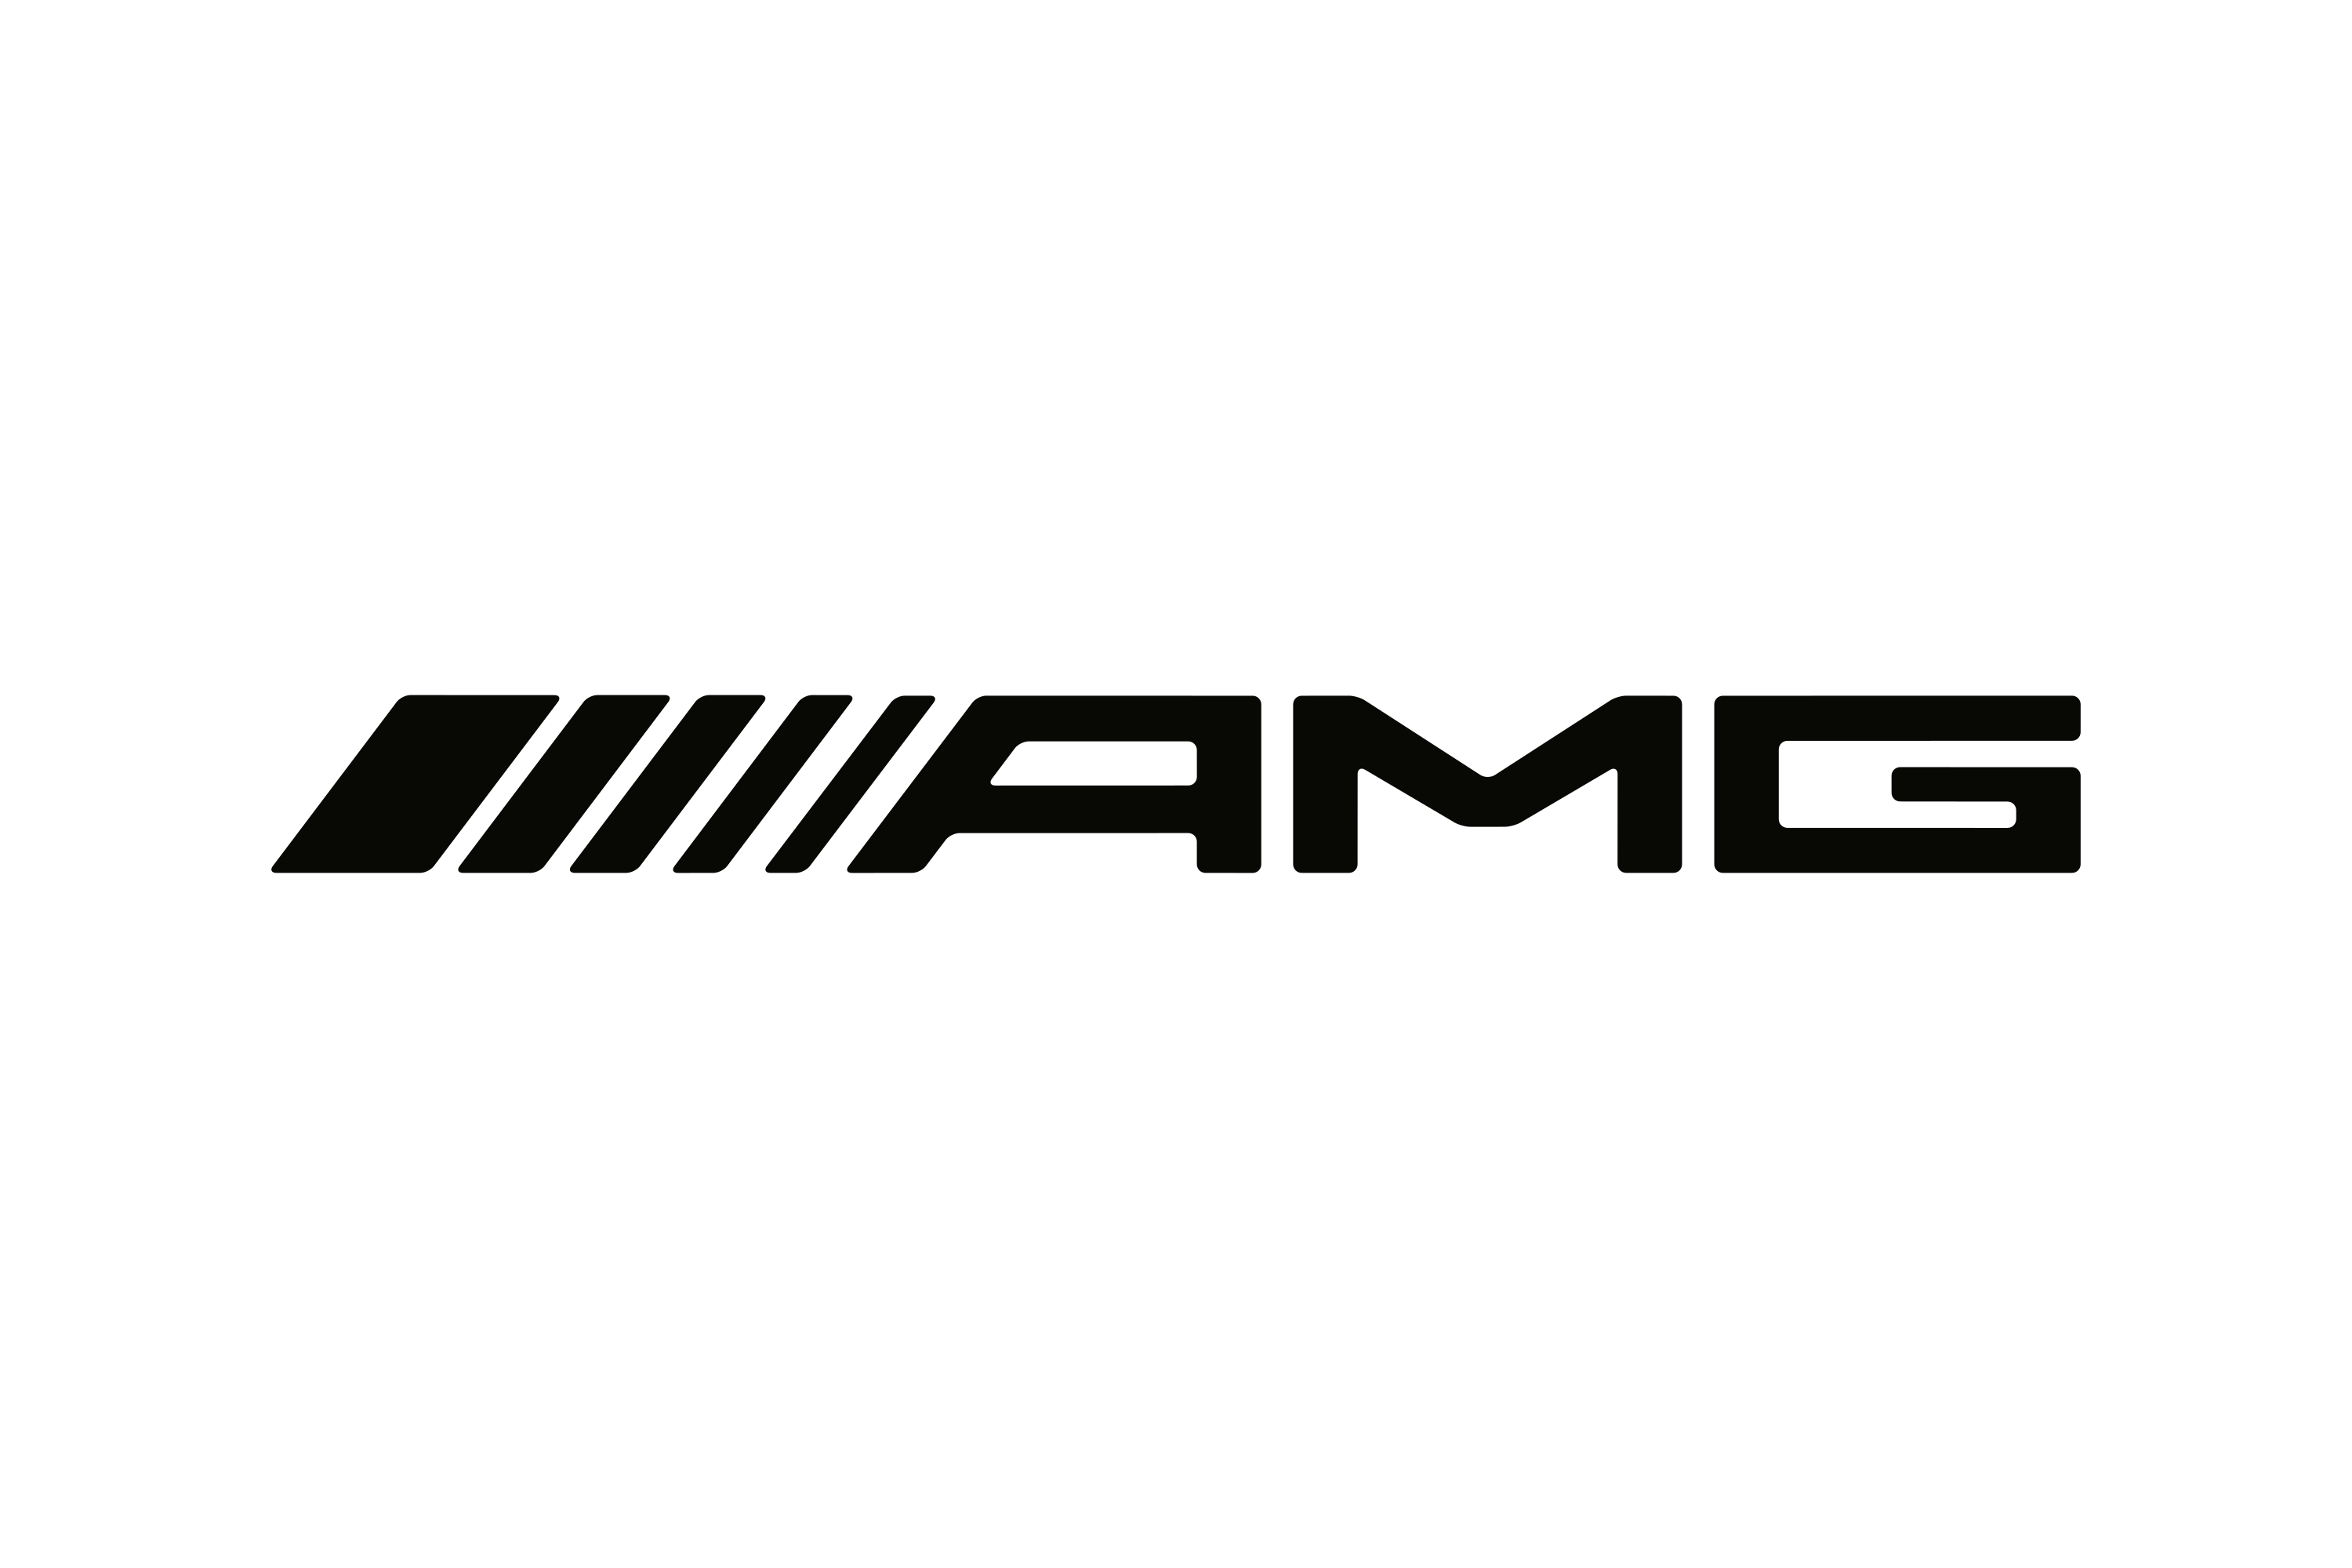 Download Mercedes-AMG Logo in SVG Vector or PNG File Format - Logo.wine